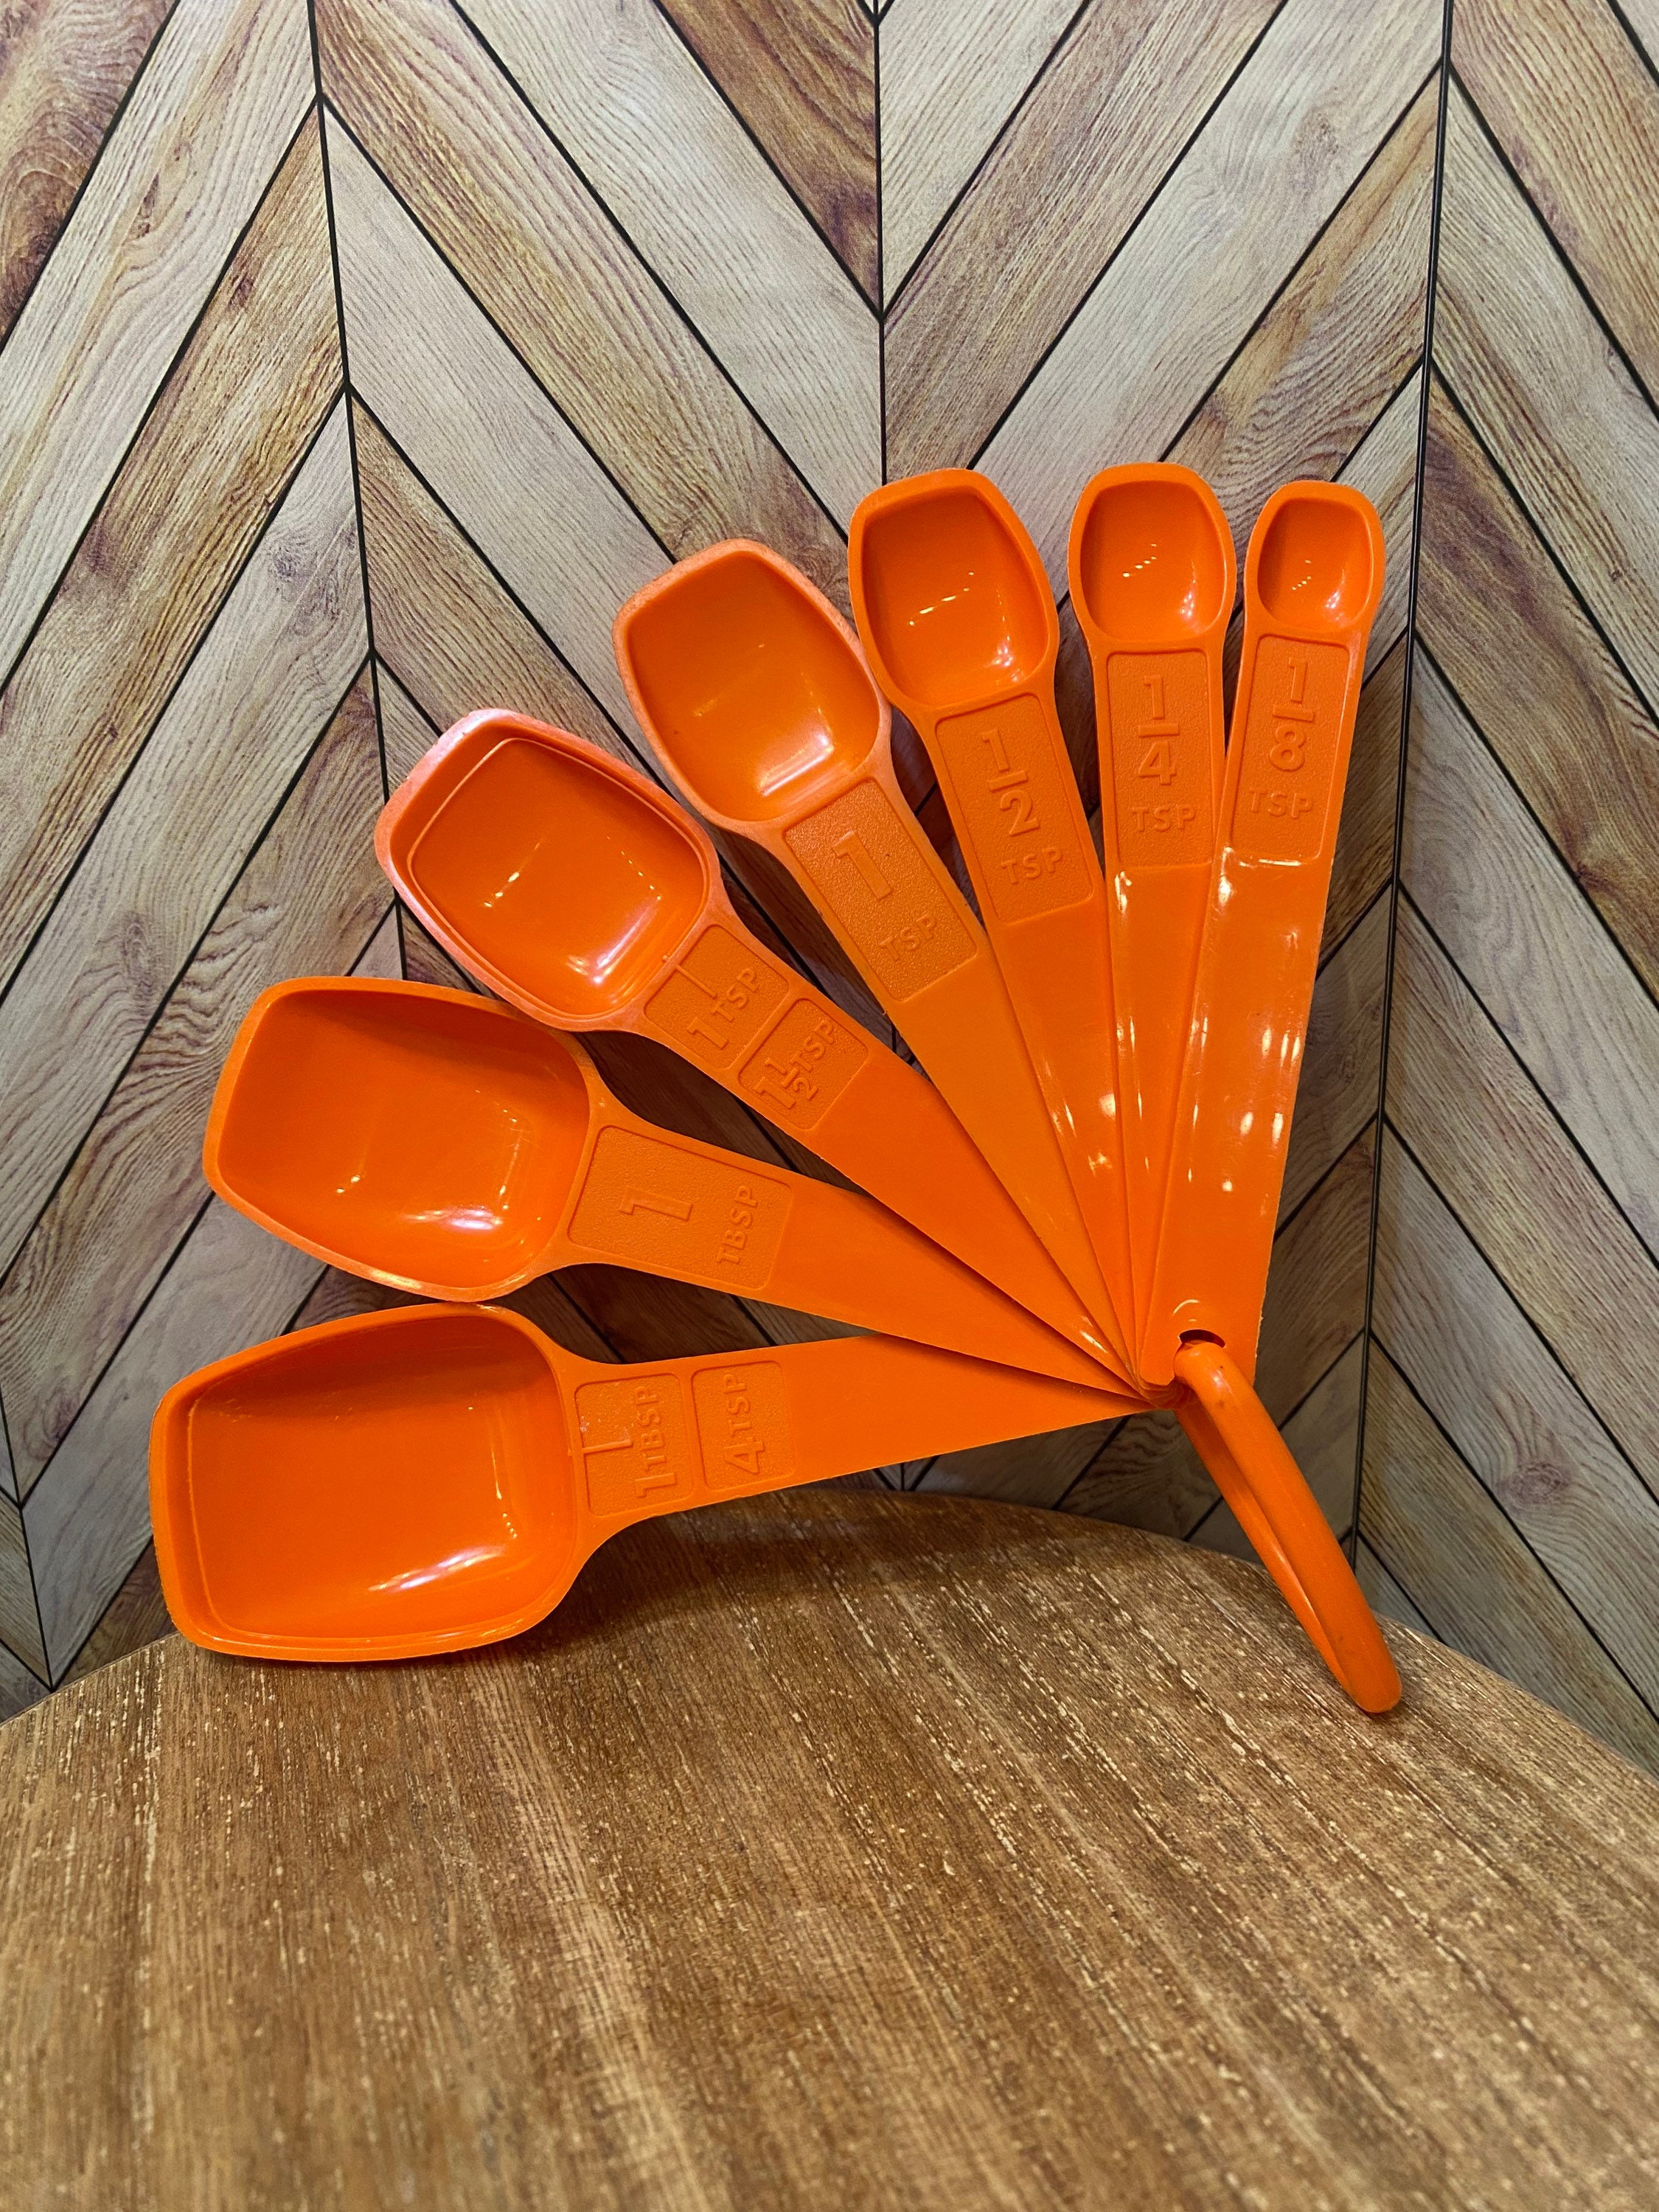 Vintage Tupperware Orange Measuring Spoons Nesting Complete Set of